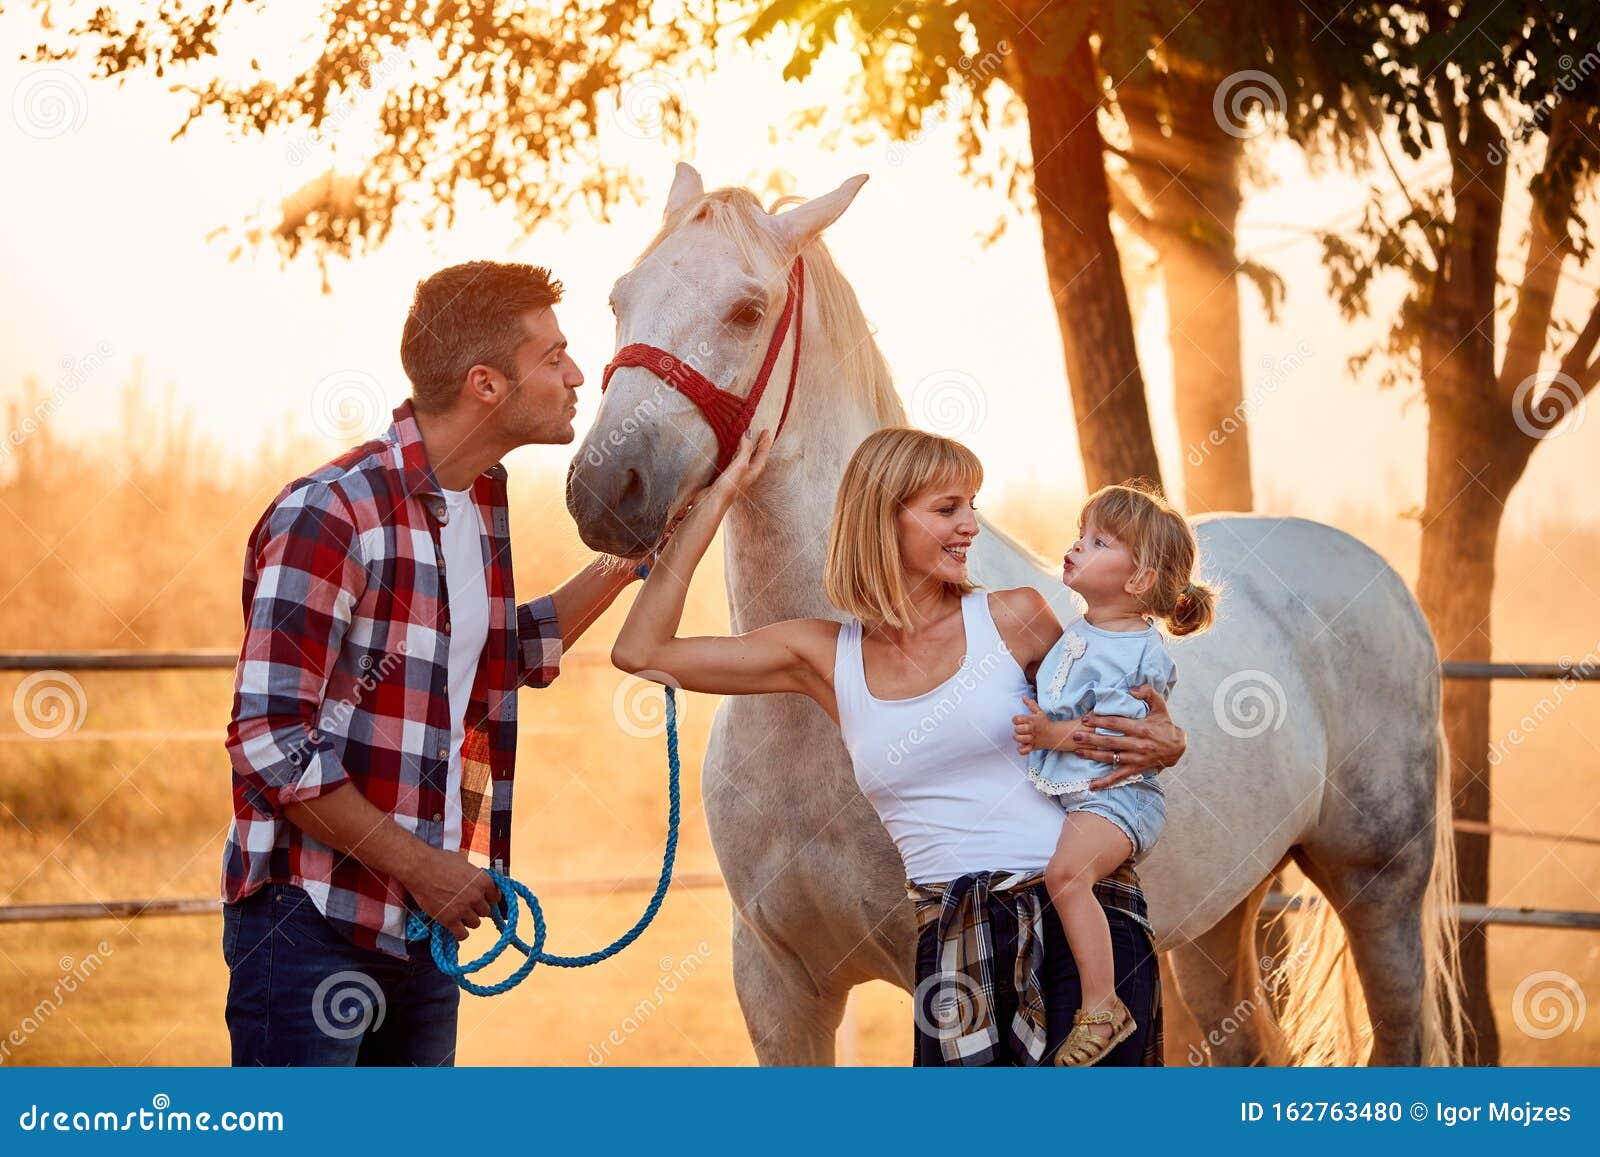 На ферме вместе с конячкой